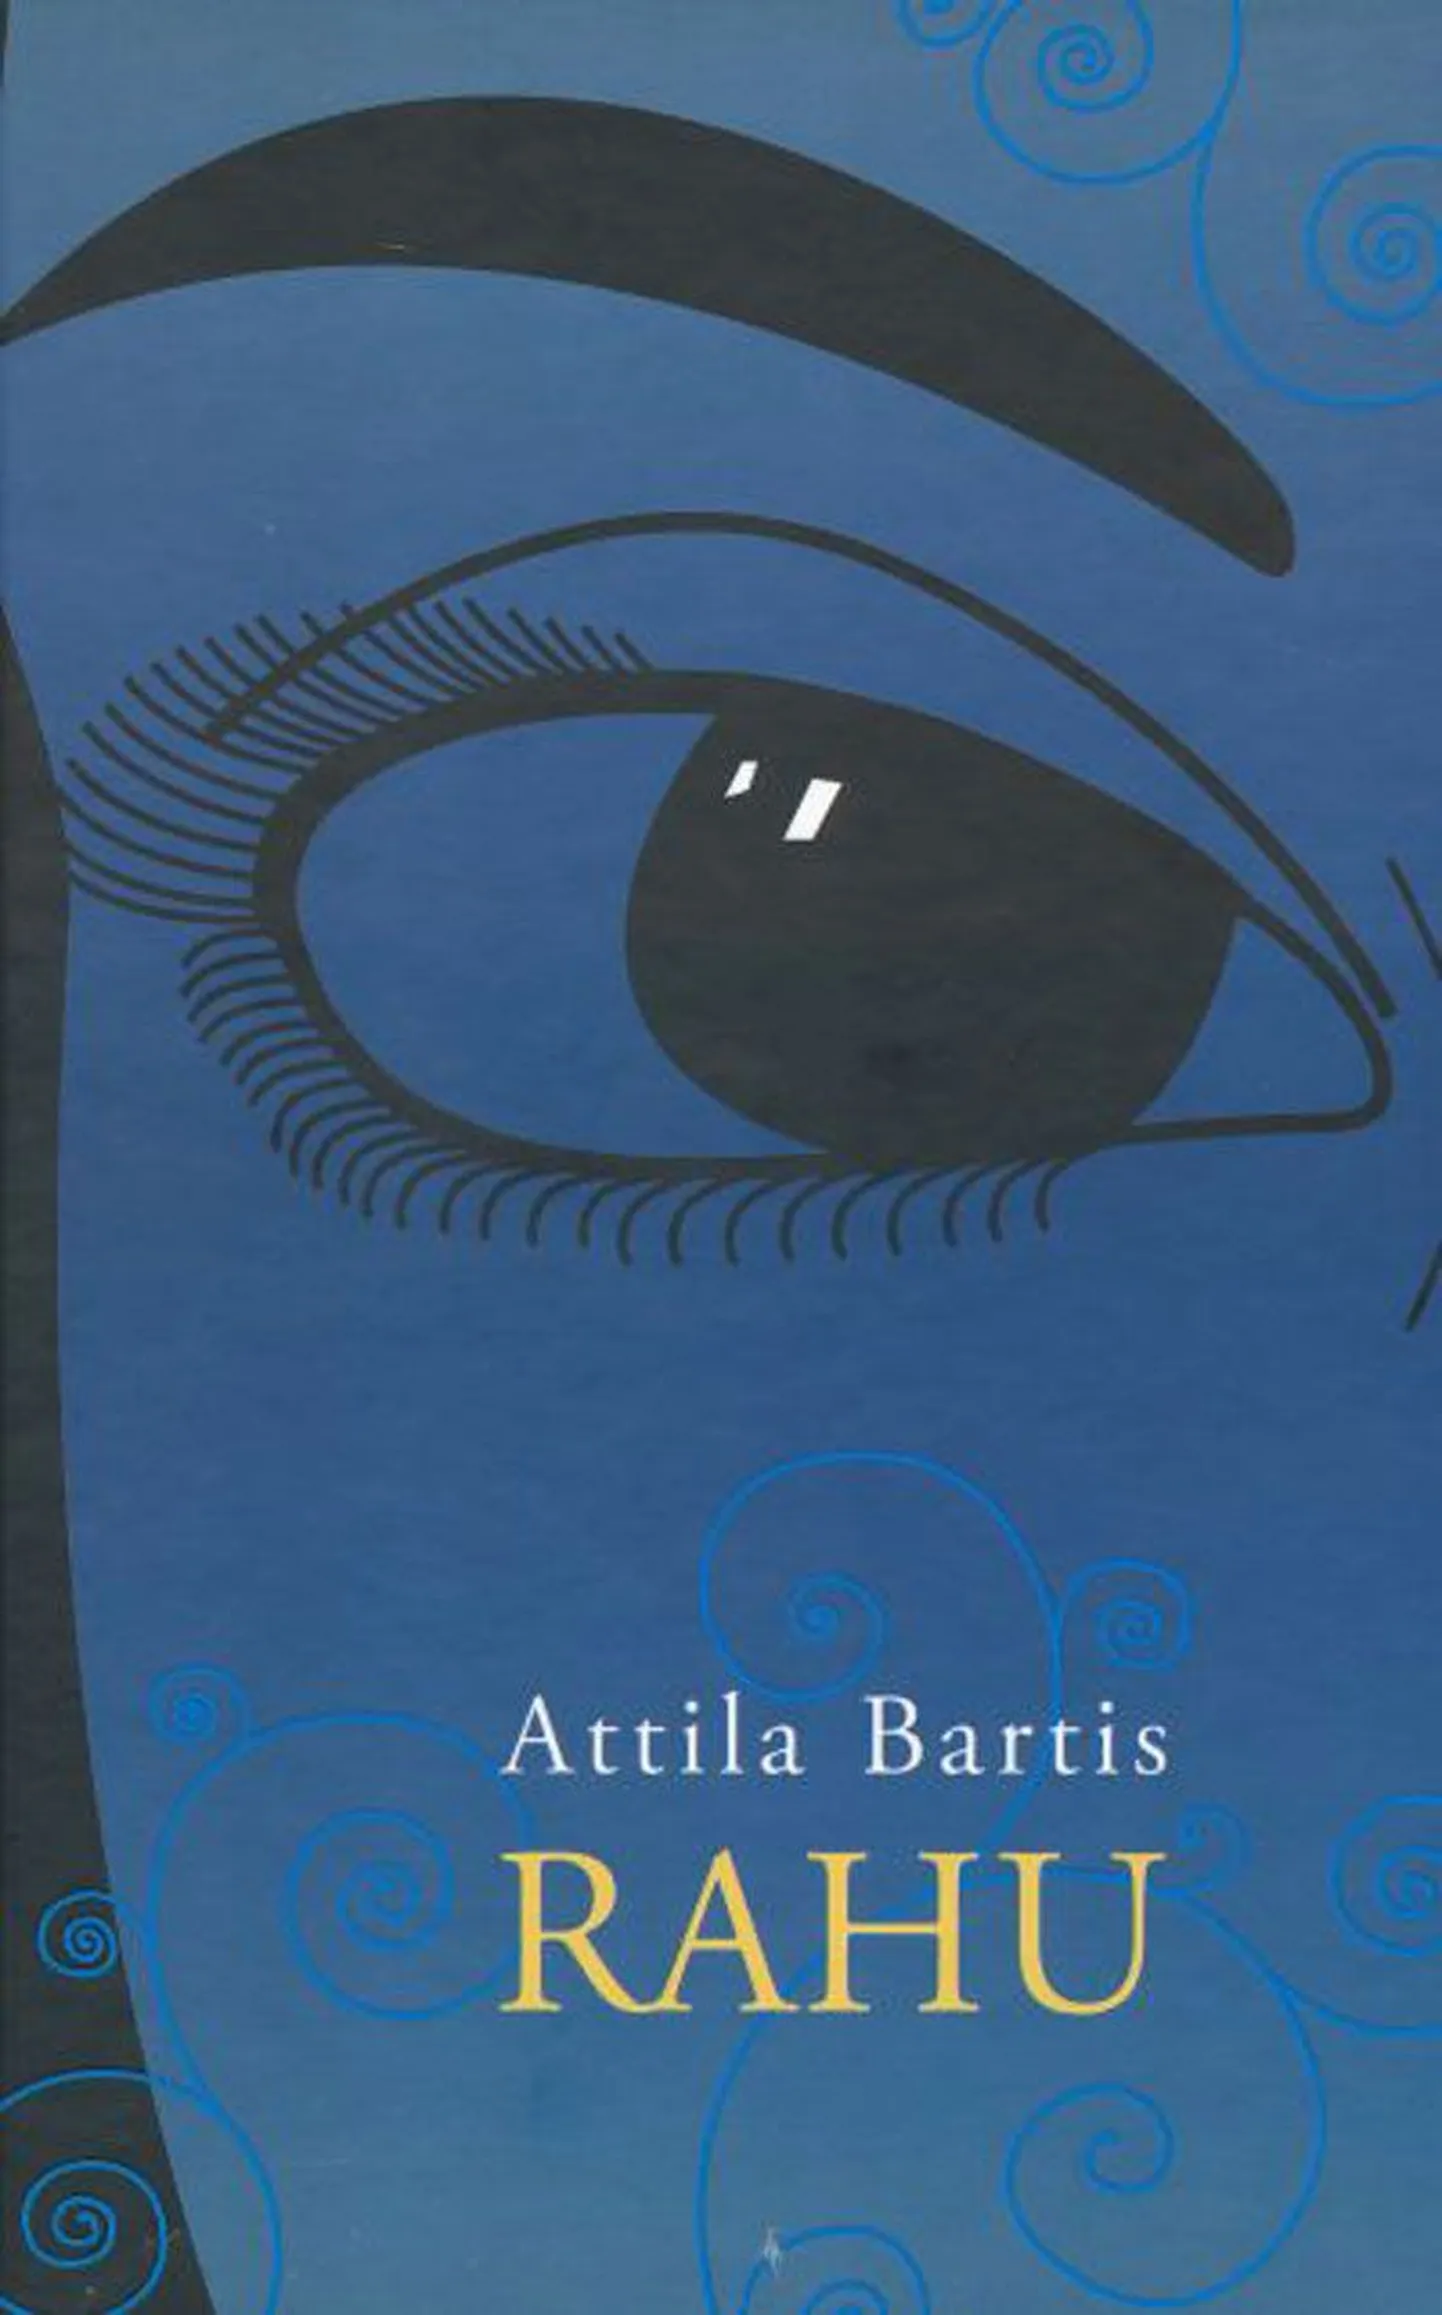 Raamat
Attila Bartis
«Rahu»
Tõlkinud Lauri Eesmaa
Eesti Keele Sihtasutus, 2009
304 lk